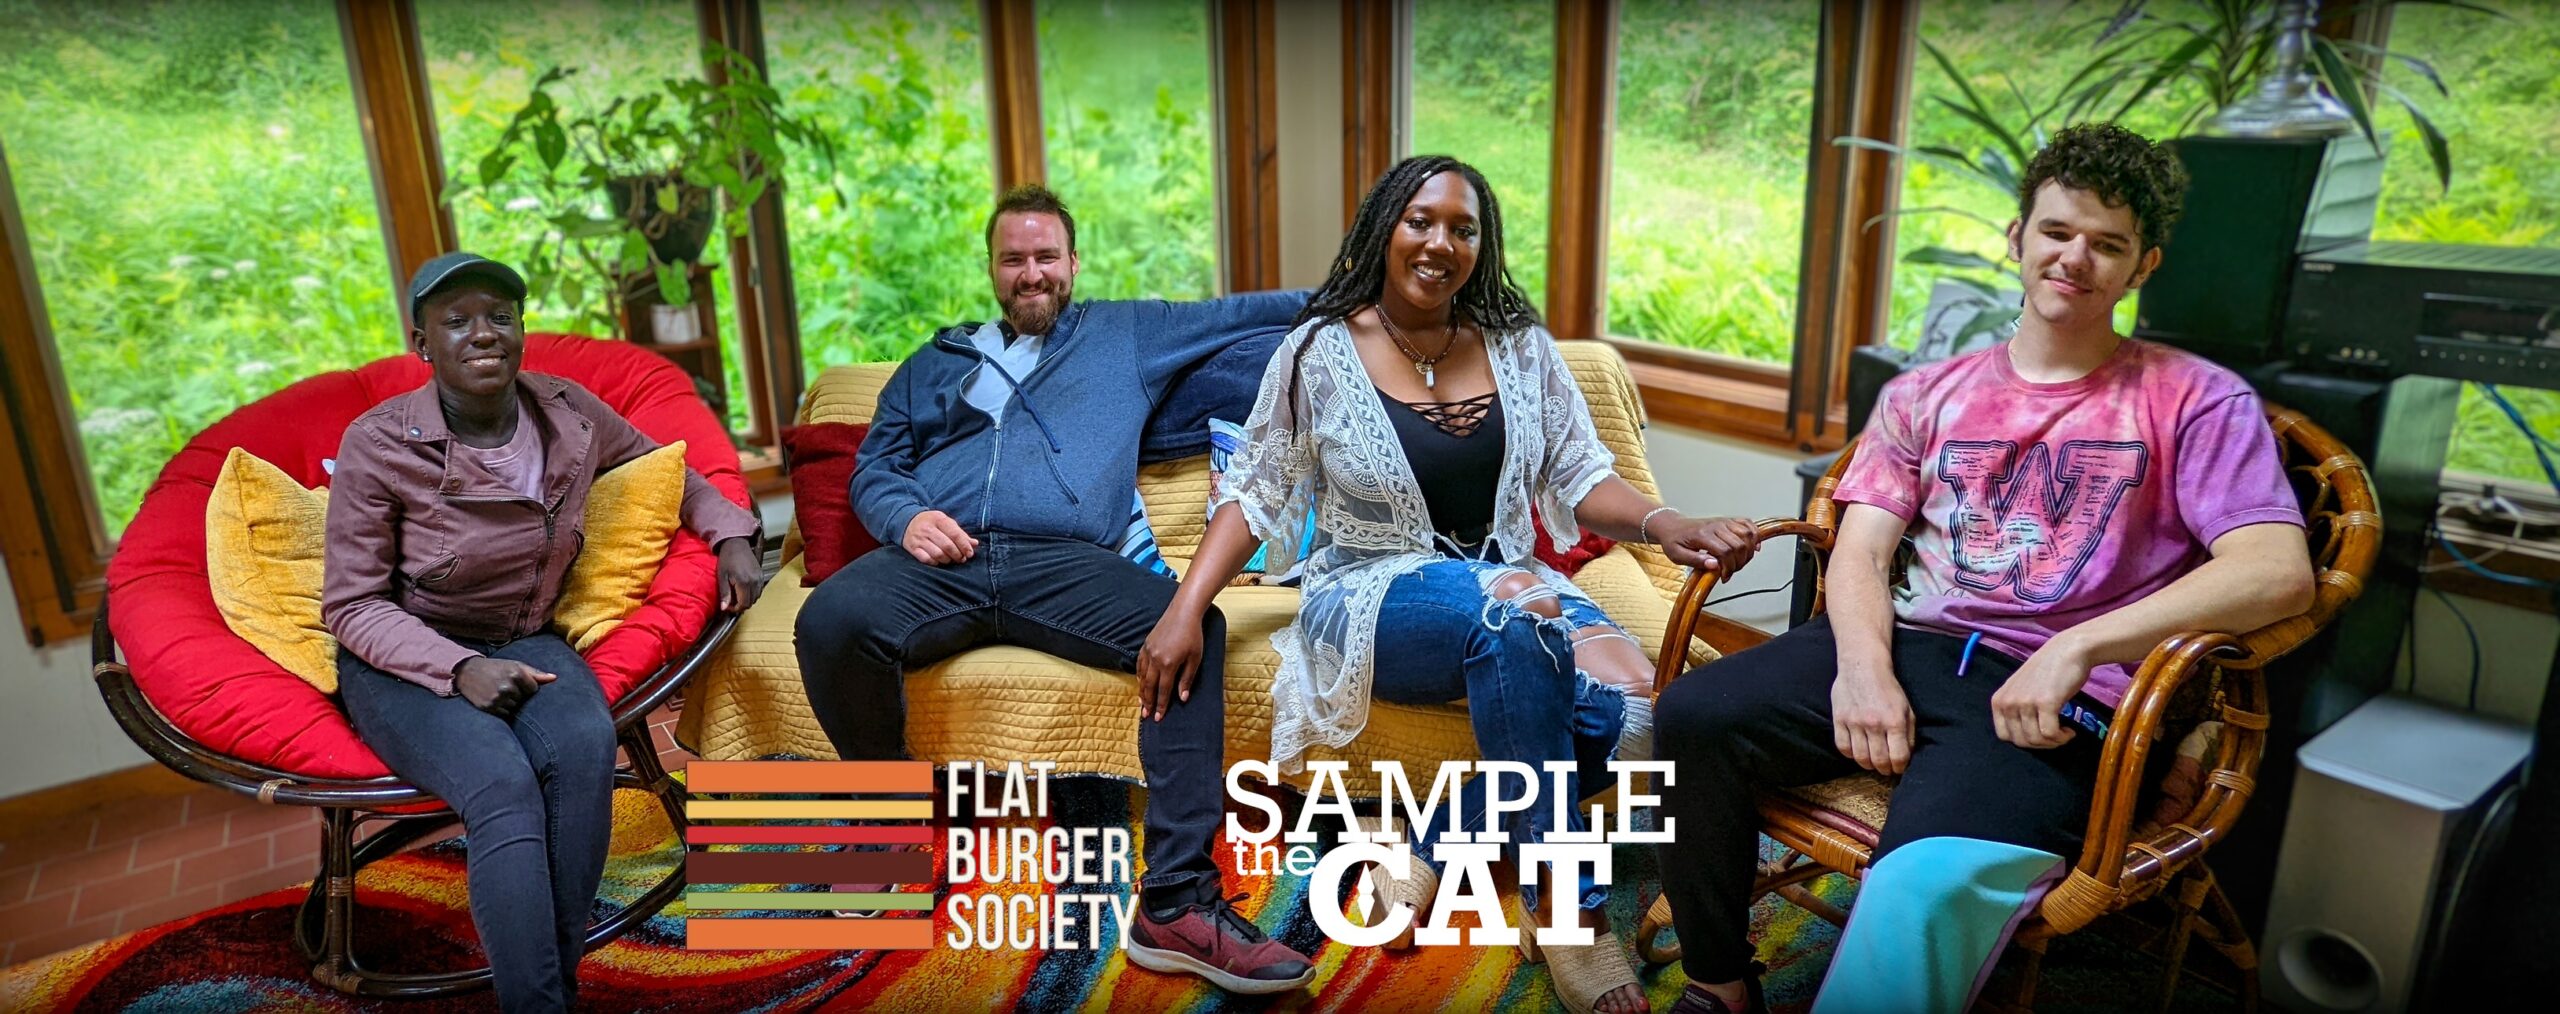 Sample the Cat at Flat Burger Society